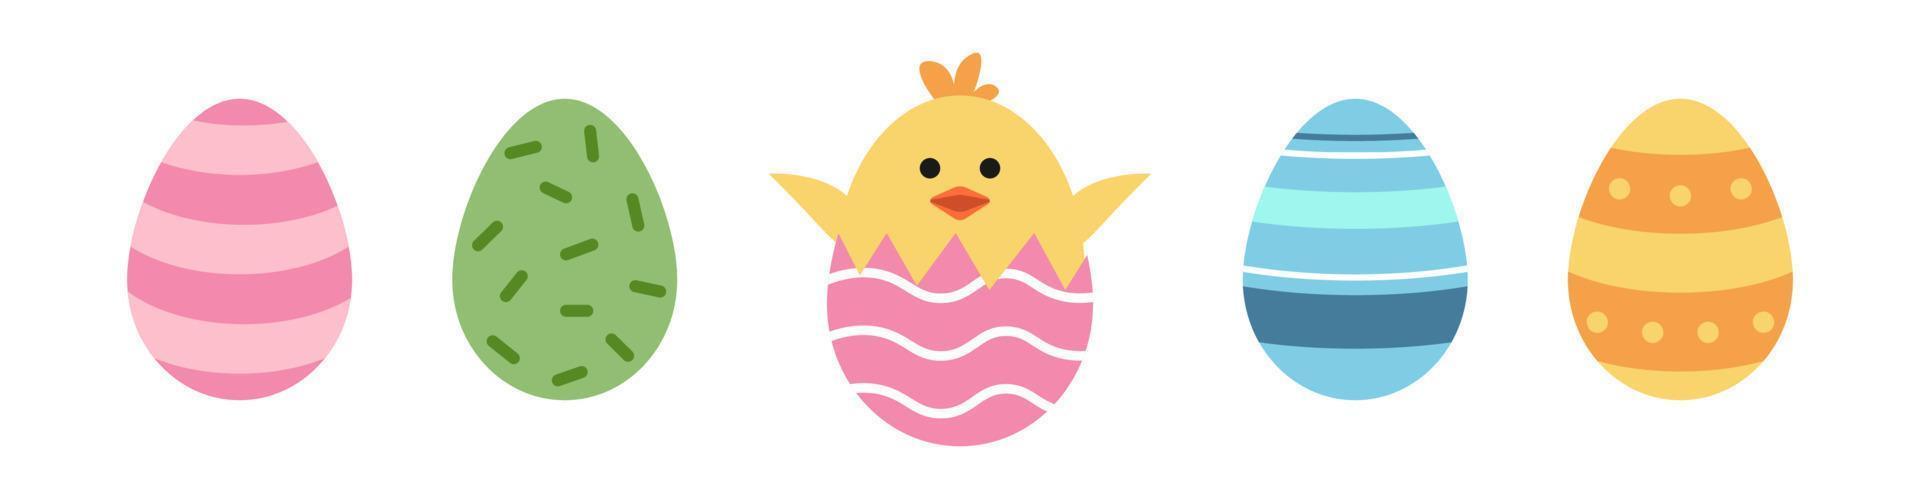 Vektor süß Ostern Satz. süß Eier und Hähnchen im Ei.